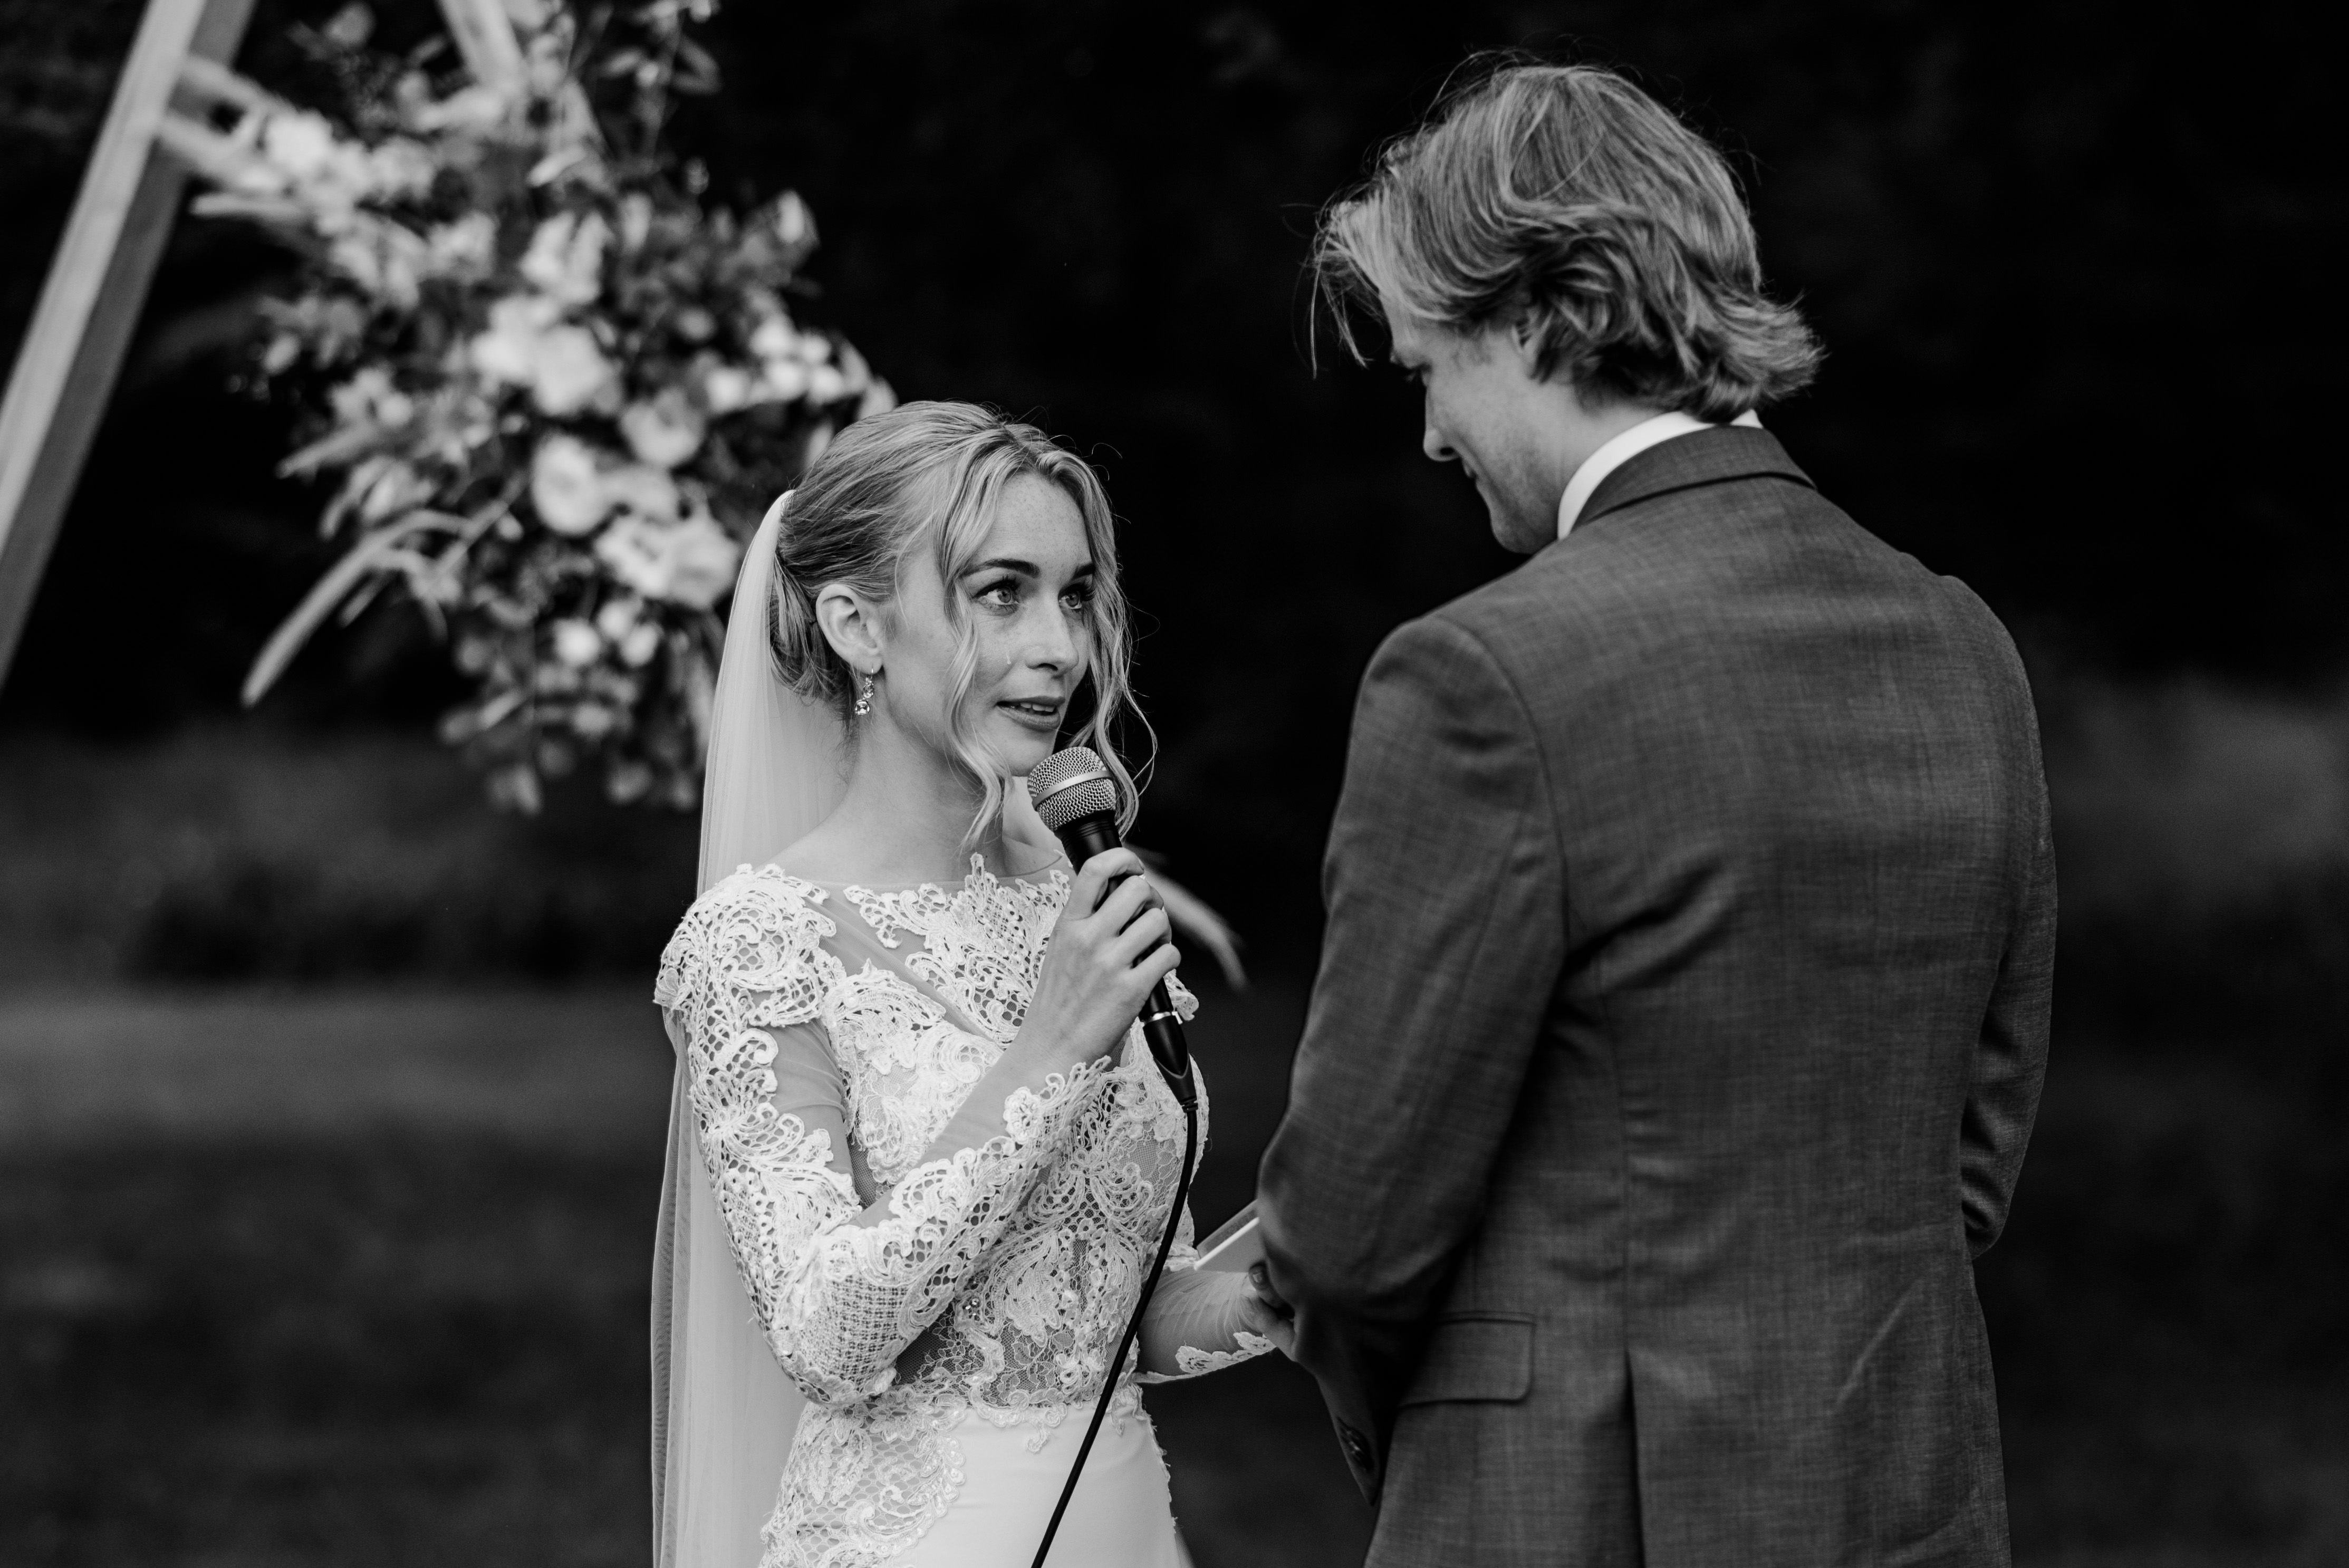 beste trouwfoto 2019, trouwfotograaf overijsel